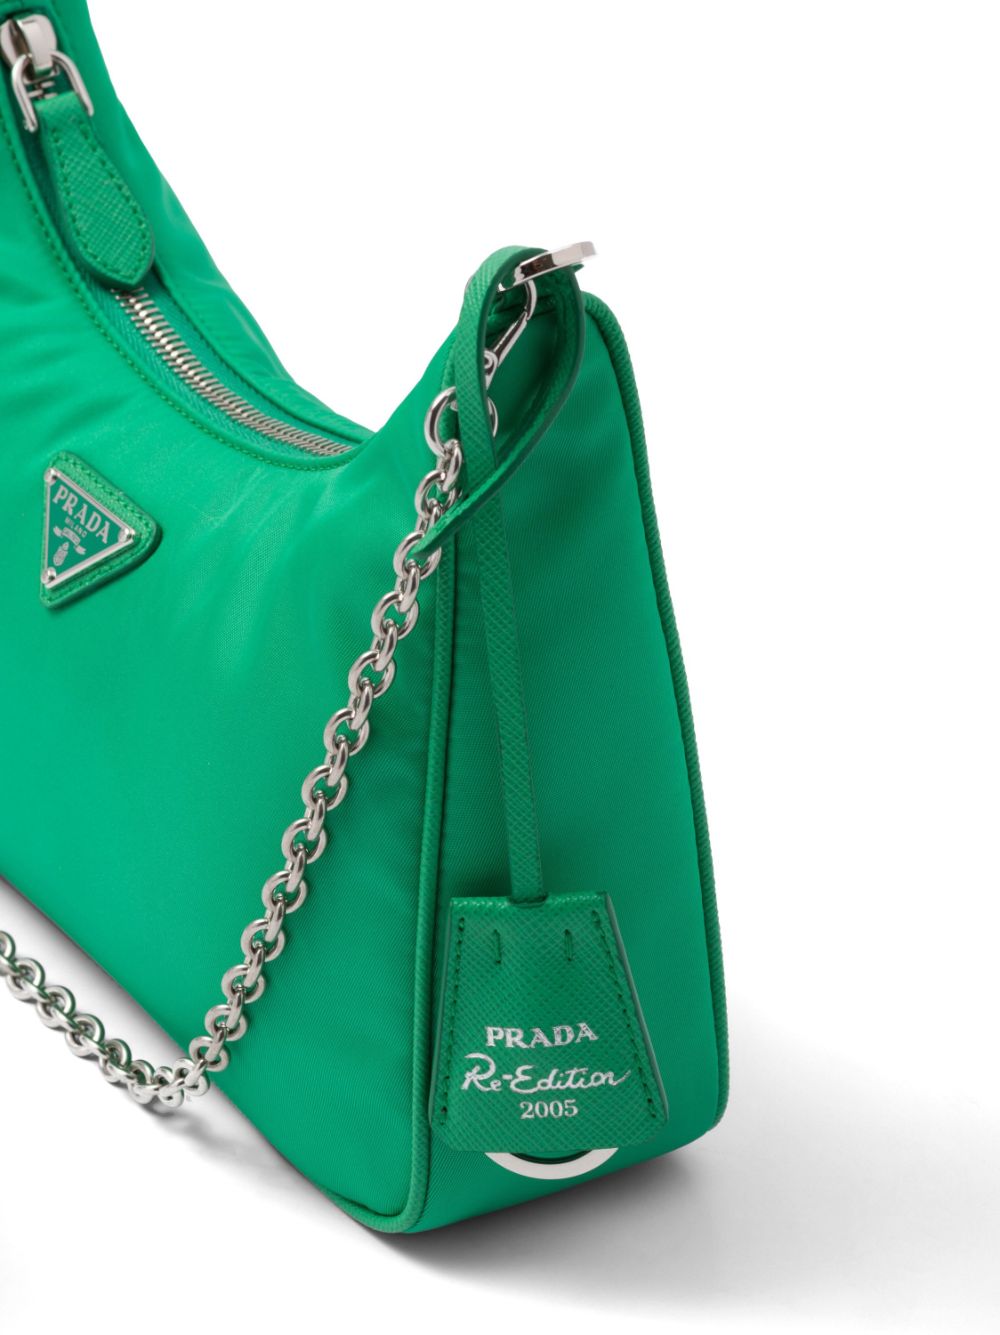 Shop Prada Re-edition 2005 Re-nylon Shoulder Bag In Green